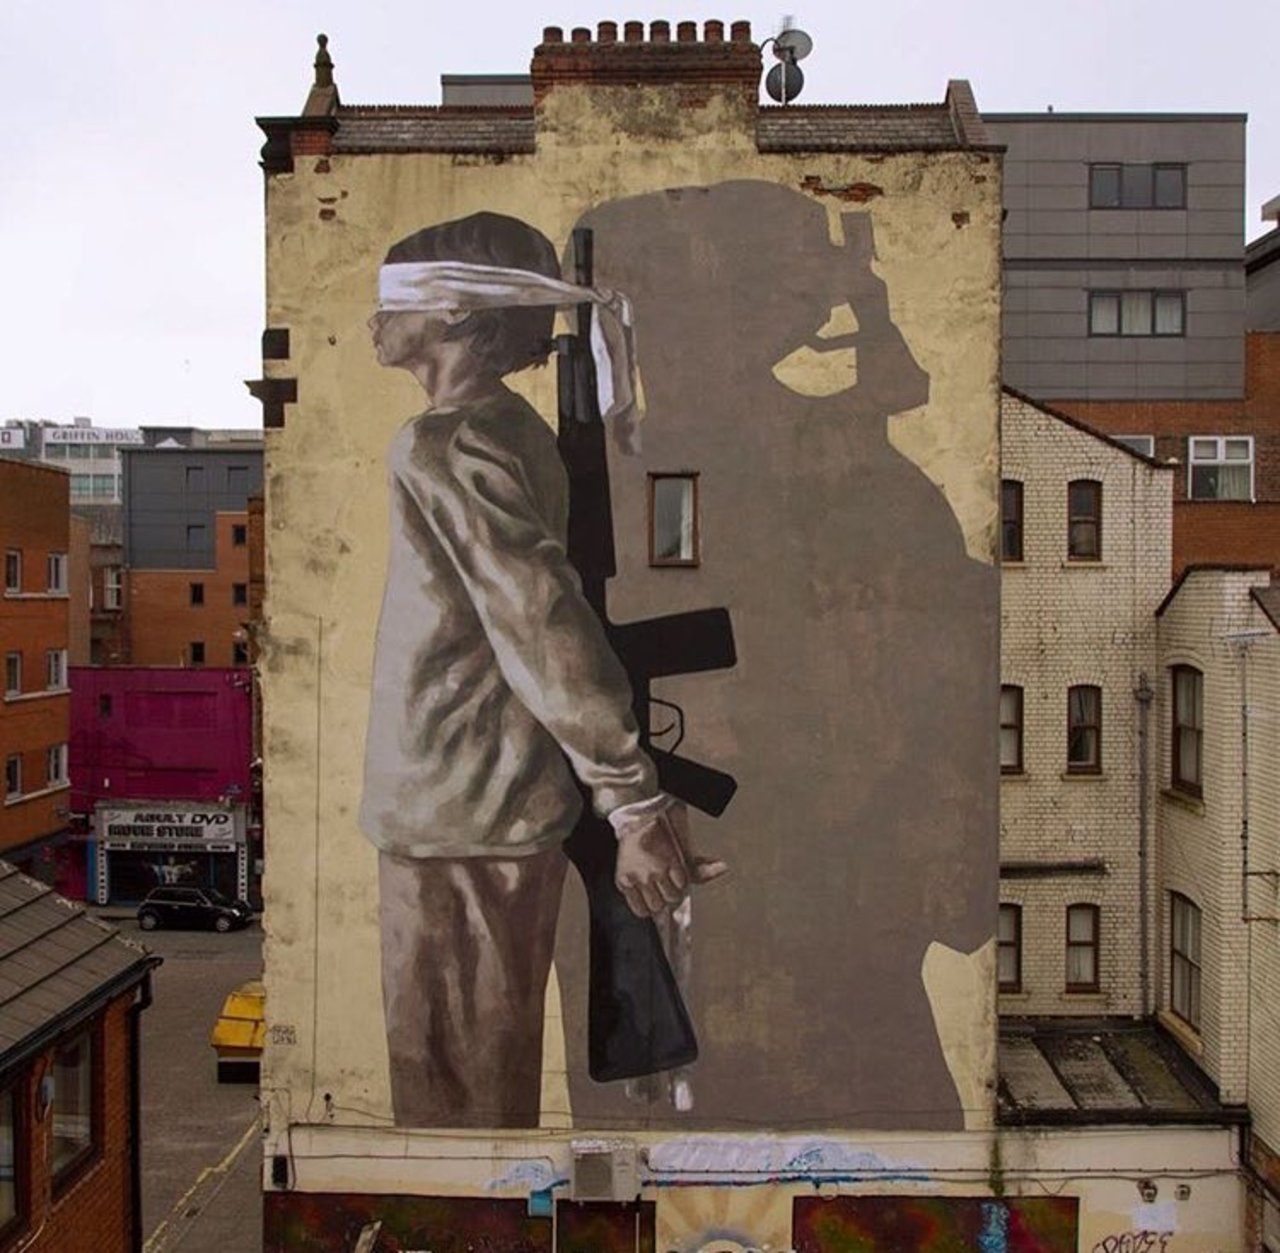 'War impact on children's life's'New Street Art - Hyuro in Manchester UK #art #mural #graffiti #streetart https://t.co/7bXT5MvJH8